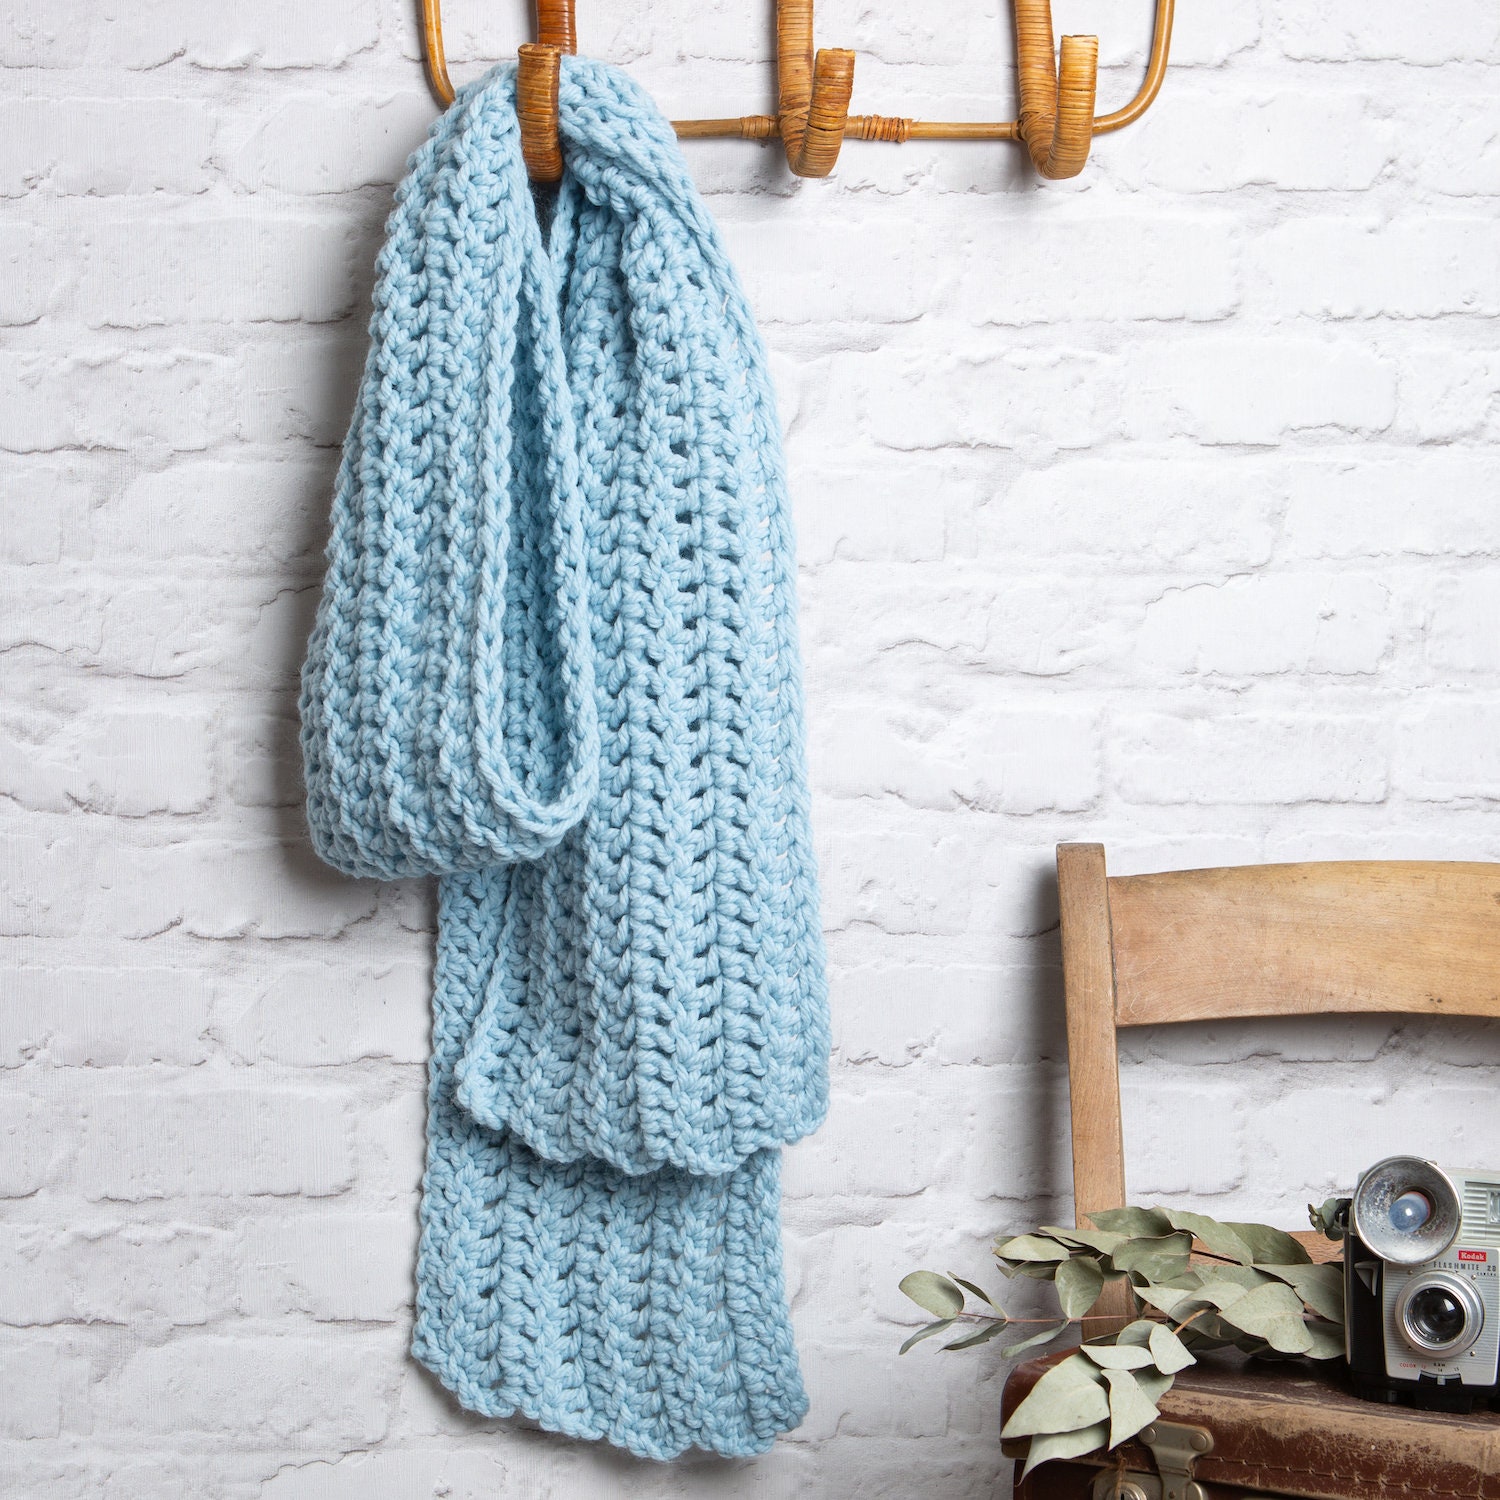 Kits Crochet Accessoires - Modèles Sacs, Écharpes, Pulls